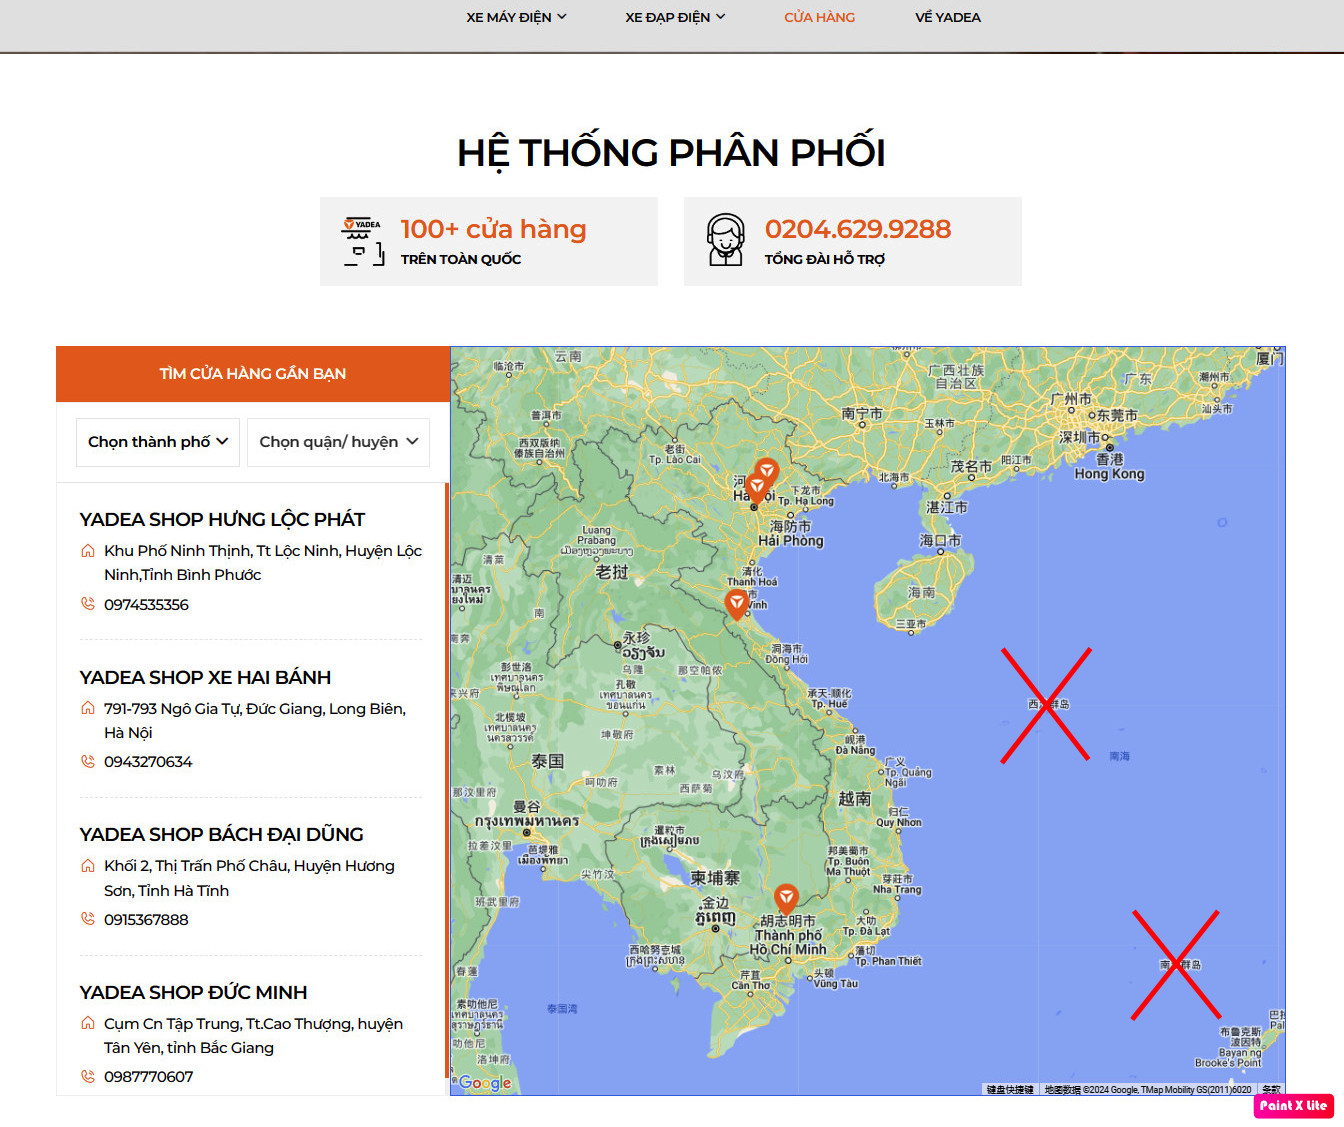 Giao diện bản đồ của Yadea Việt Nam hiển thị tên hai quần đảo Tây Sa, Nam Sa (dấu X) thay cho Hoàng Sa, Trường Sa. Ảnh chụp màn hình sáng 19/5